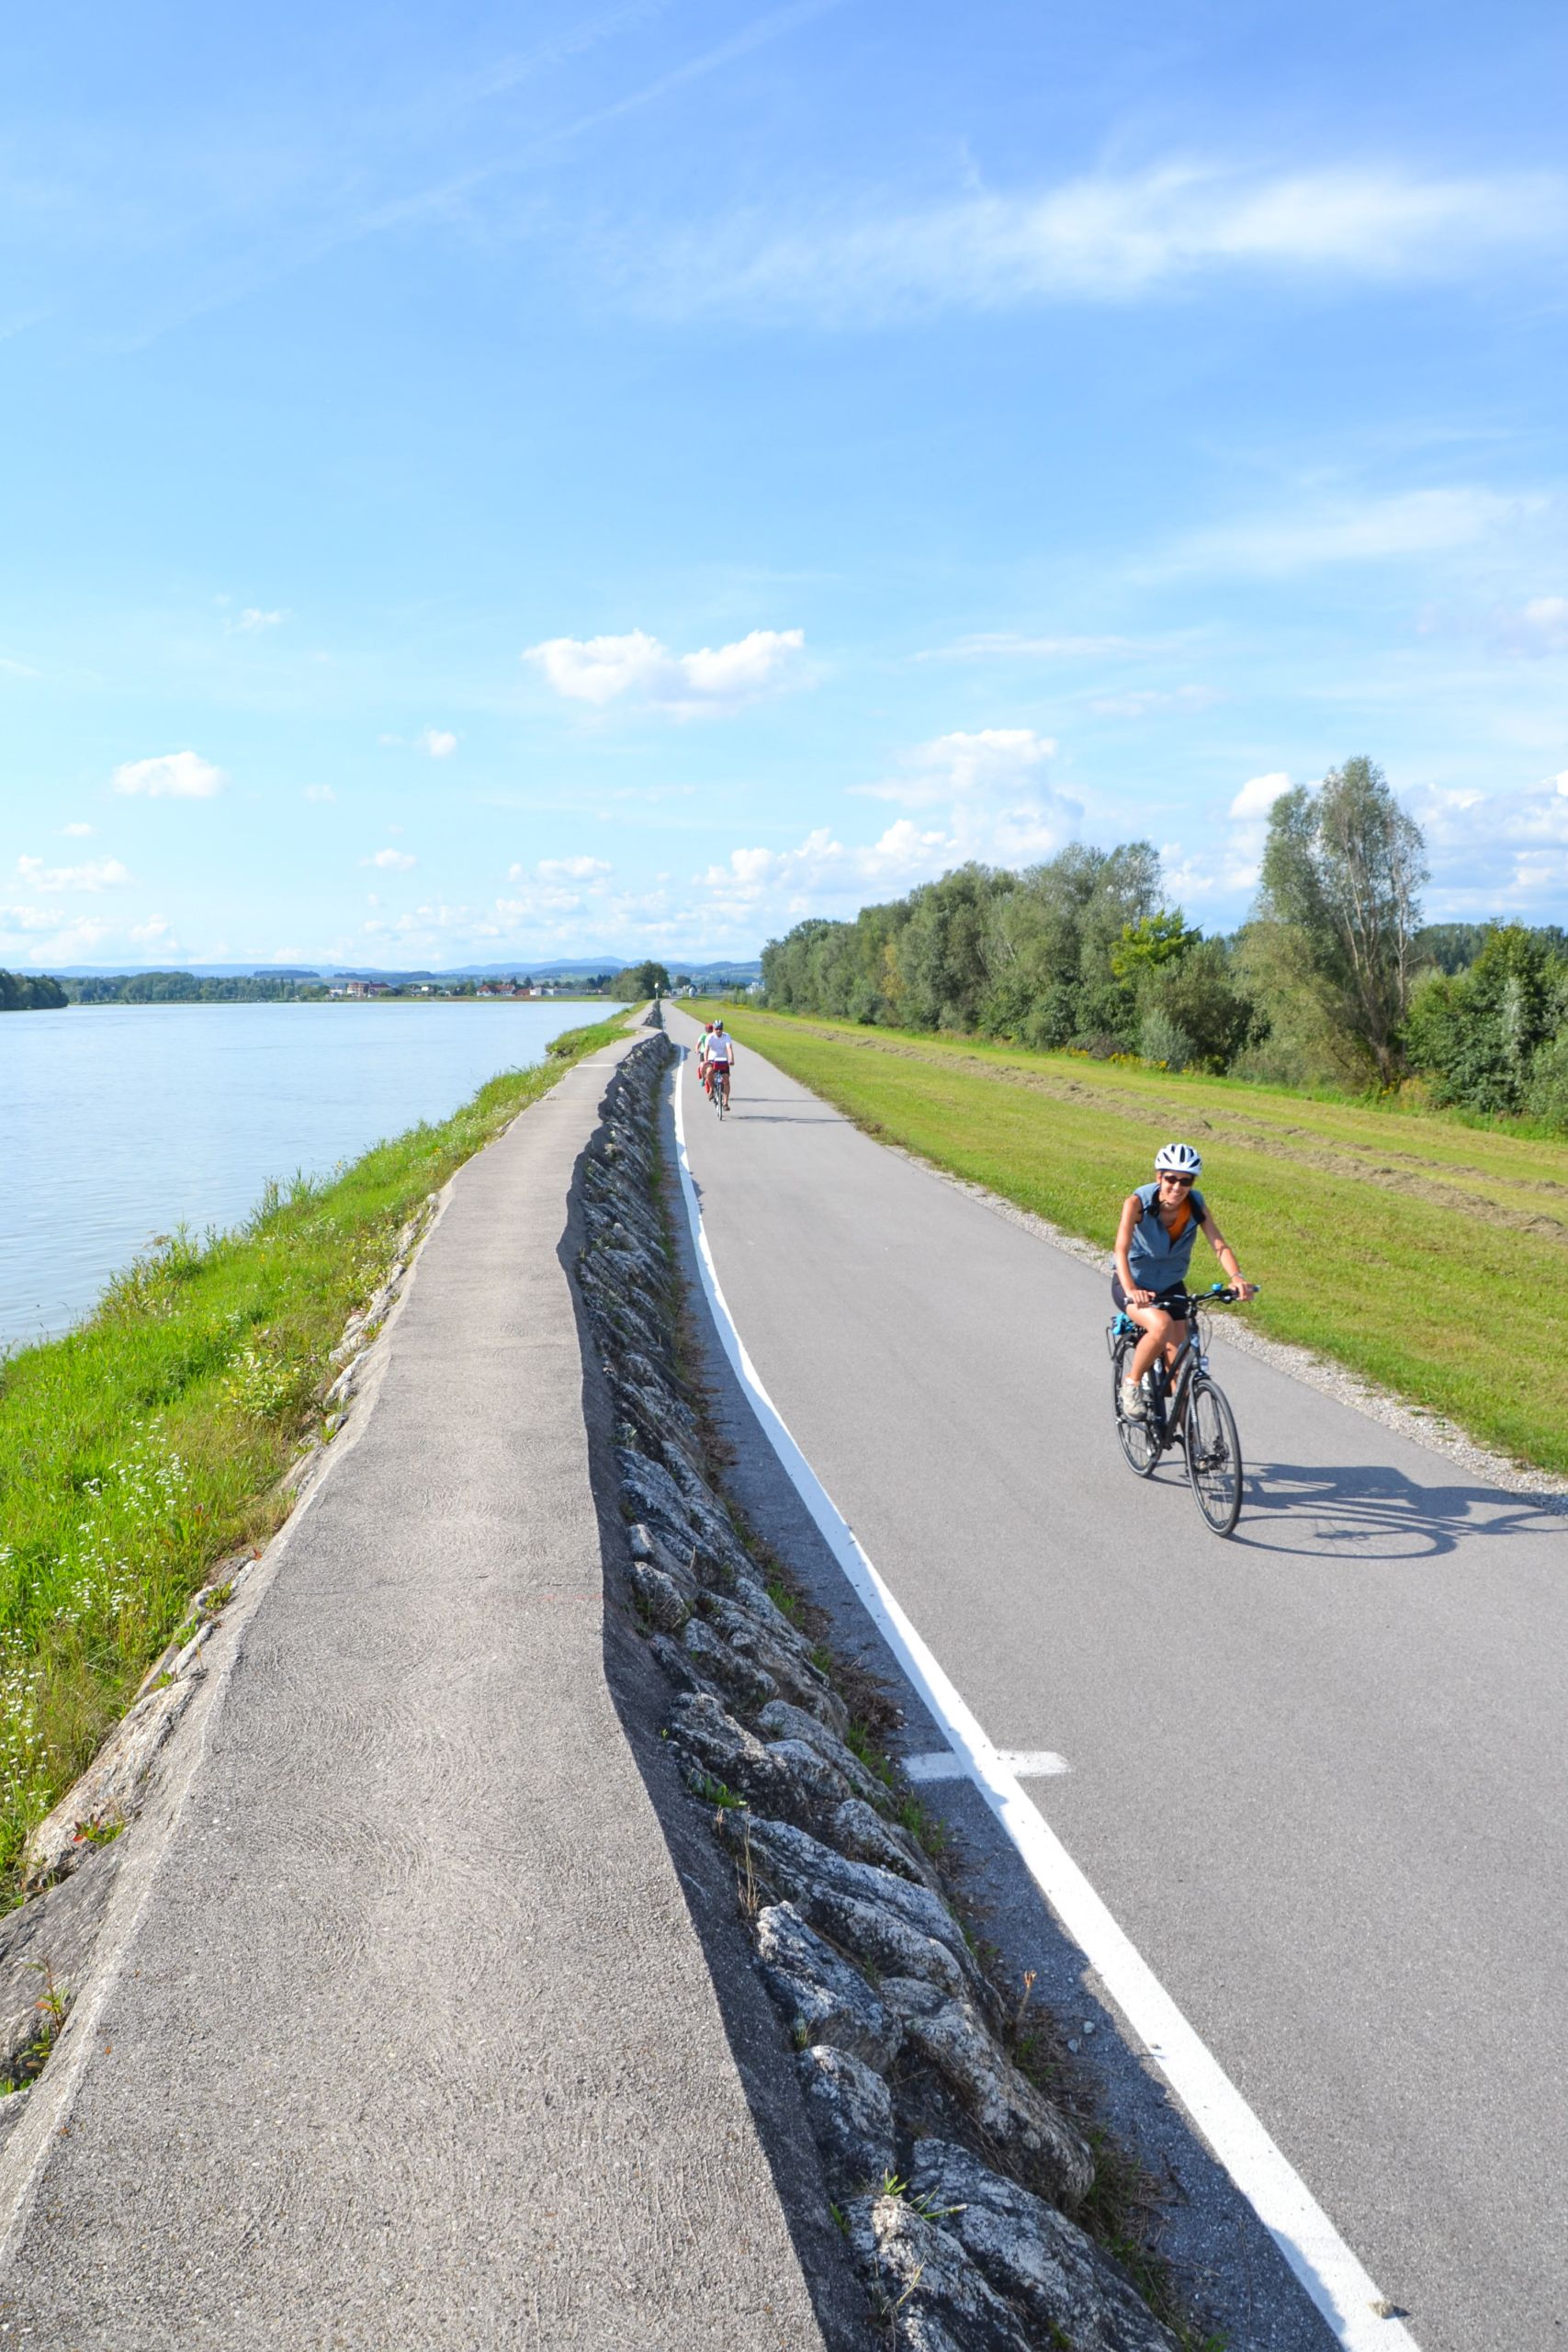 Cicloturisti, percorso pianeggiante, paesaggio verde, fiume Danubio, vacanza in bici tra Austria e Germania